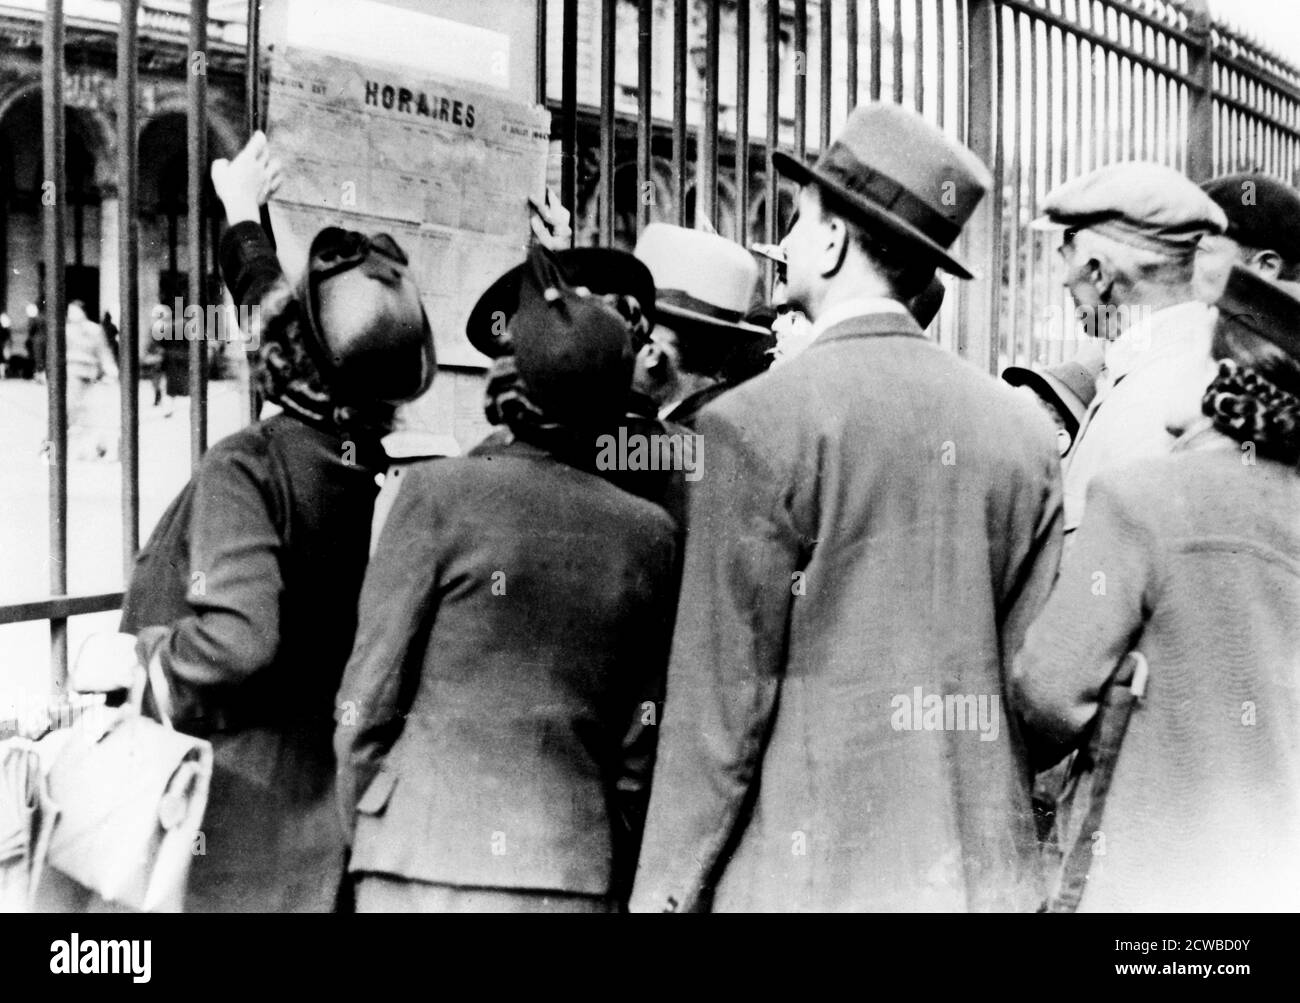 Flüchtlinge studieren einen Zugfahrplan, Gare de l'Est, Paris, Juli 1940. Menschen, die die deutschen Invasoren geflohen waren, bereiten sich darauf vor, nach der Niederlage Frankreichs in ihre Häuser zurückzukehren. Der Fotograf ist unbekannt. Stockfoto